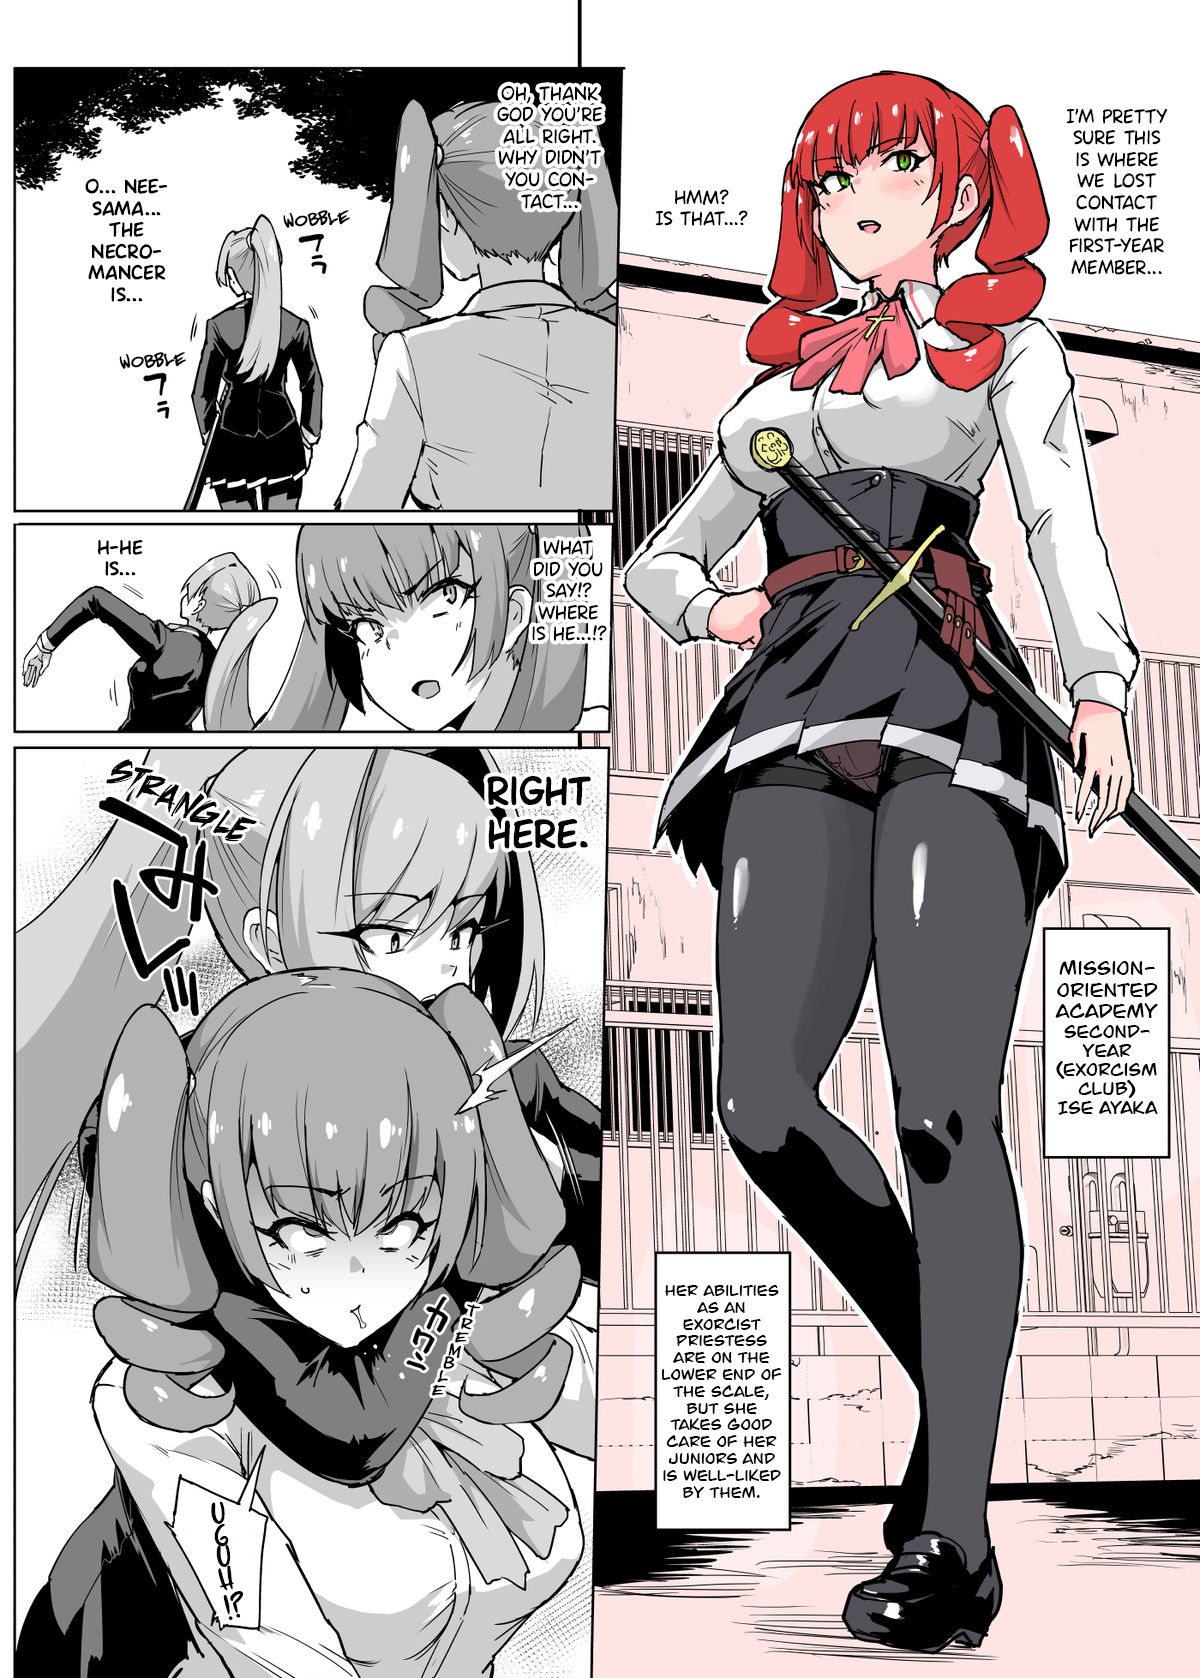 EAHentai: English Hentai Doujinshi and Manga